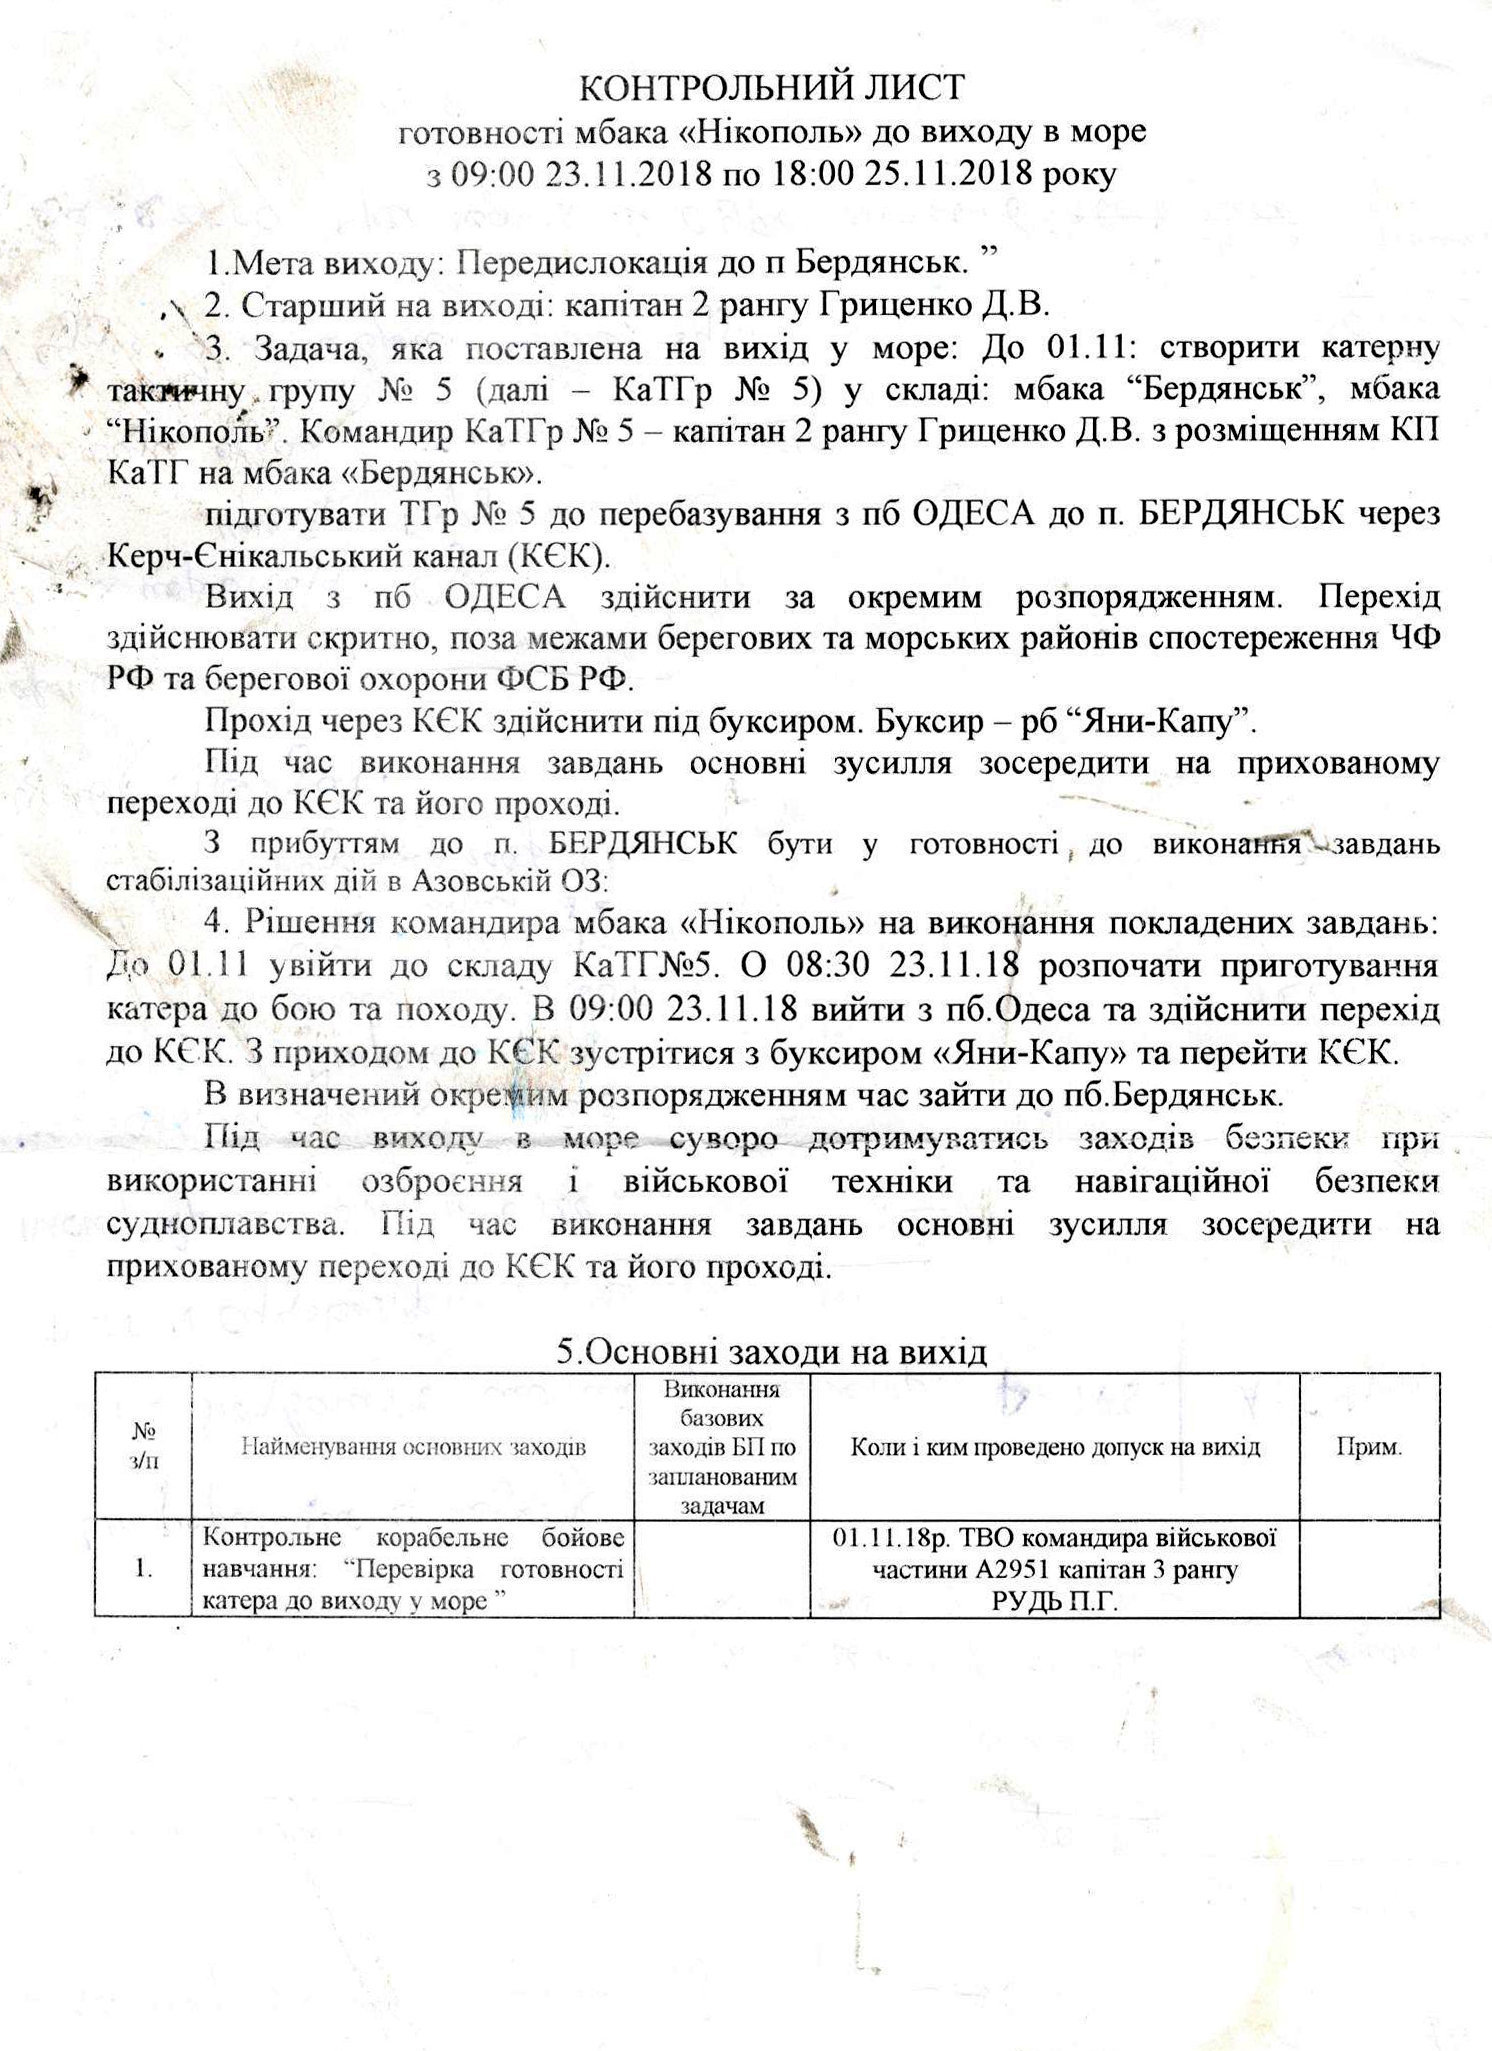 ФСБ обнародовала трофейные документы, изъятые у украинских моряков